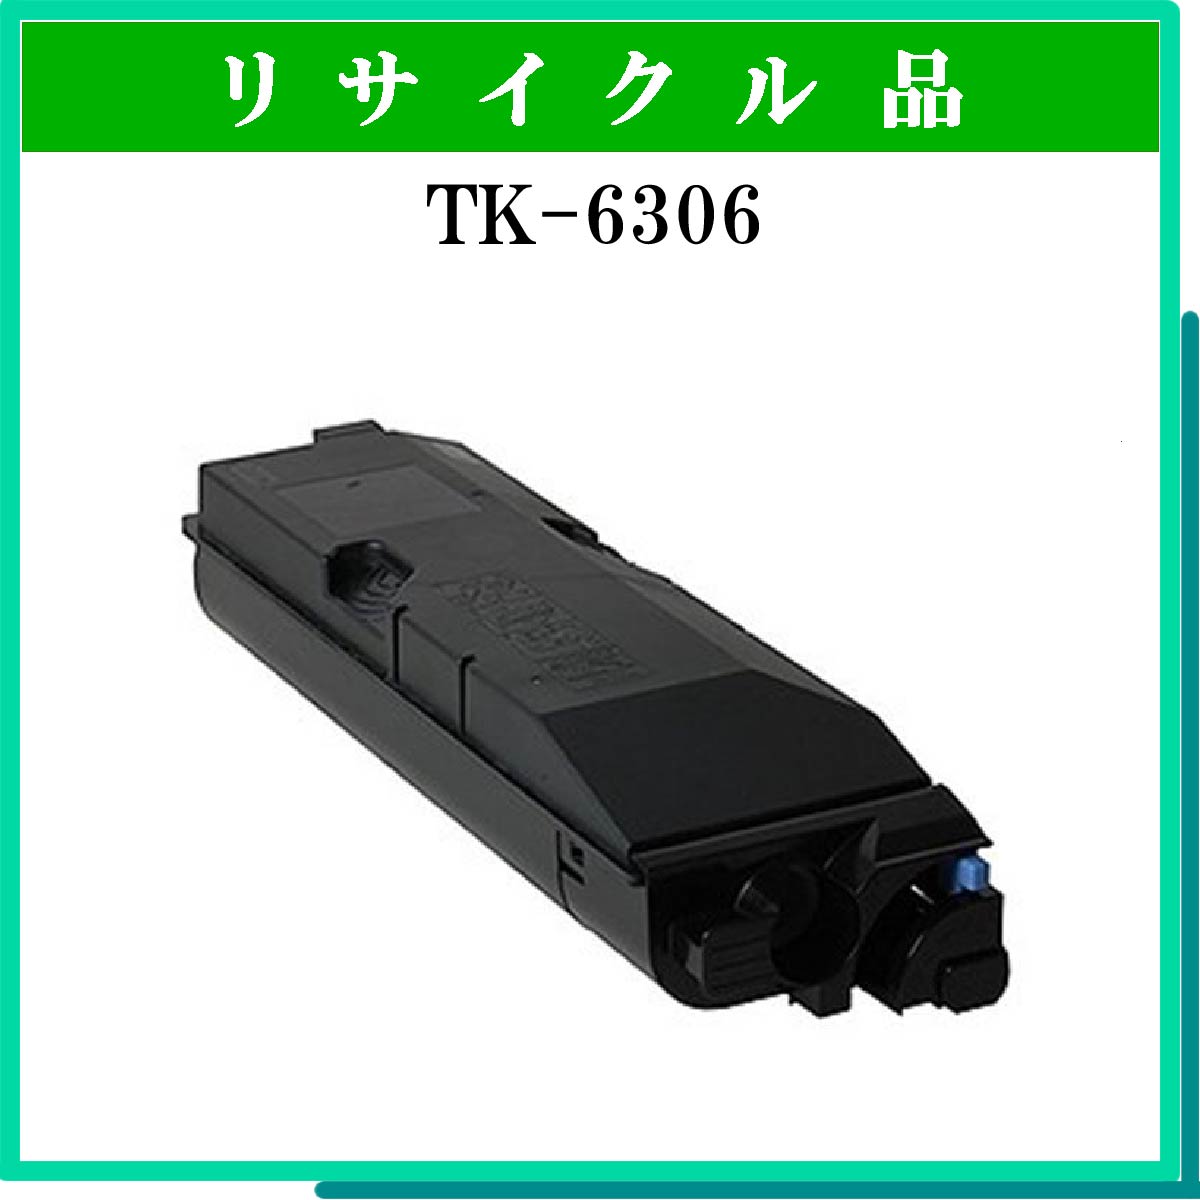 TK-6306